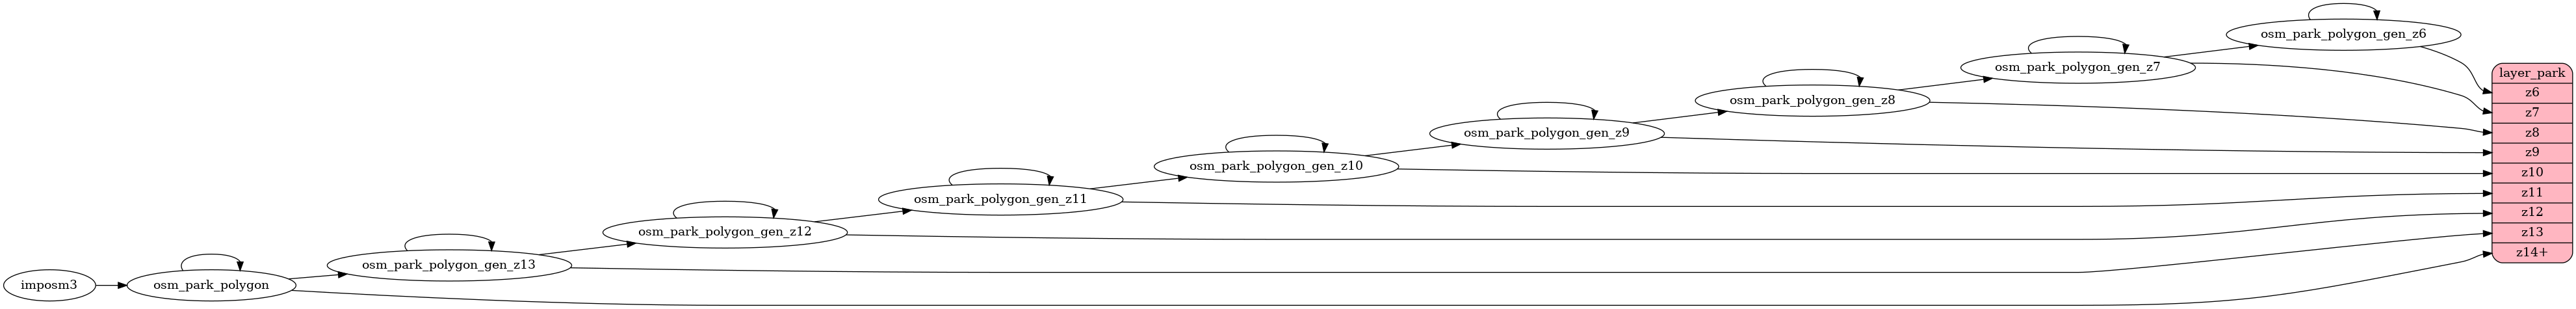 ETL diagram for park